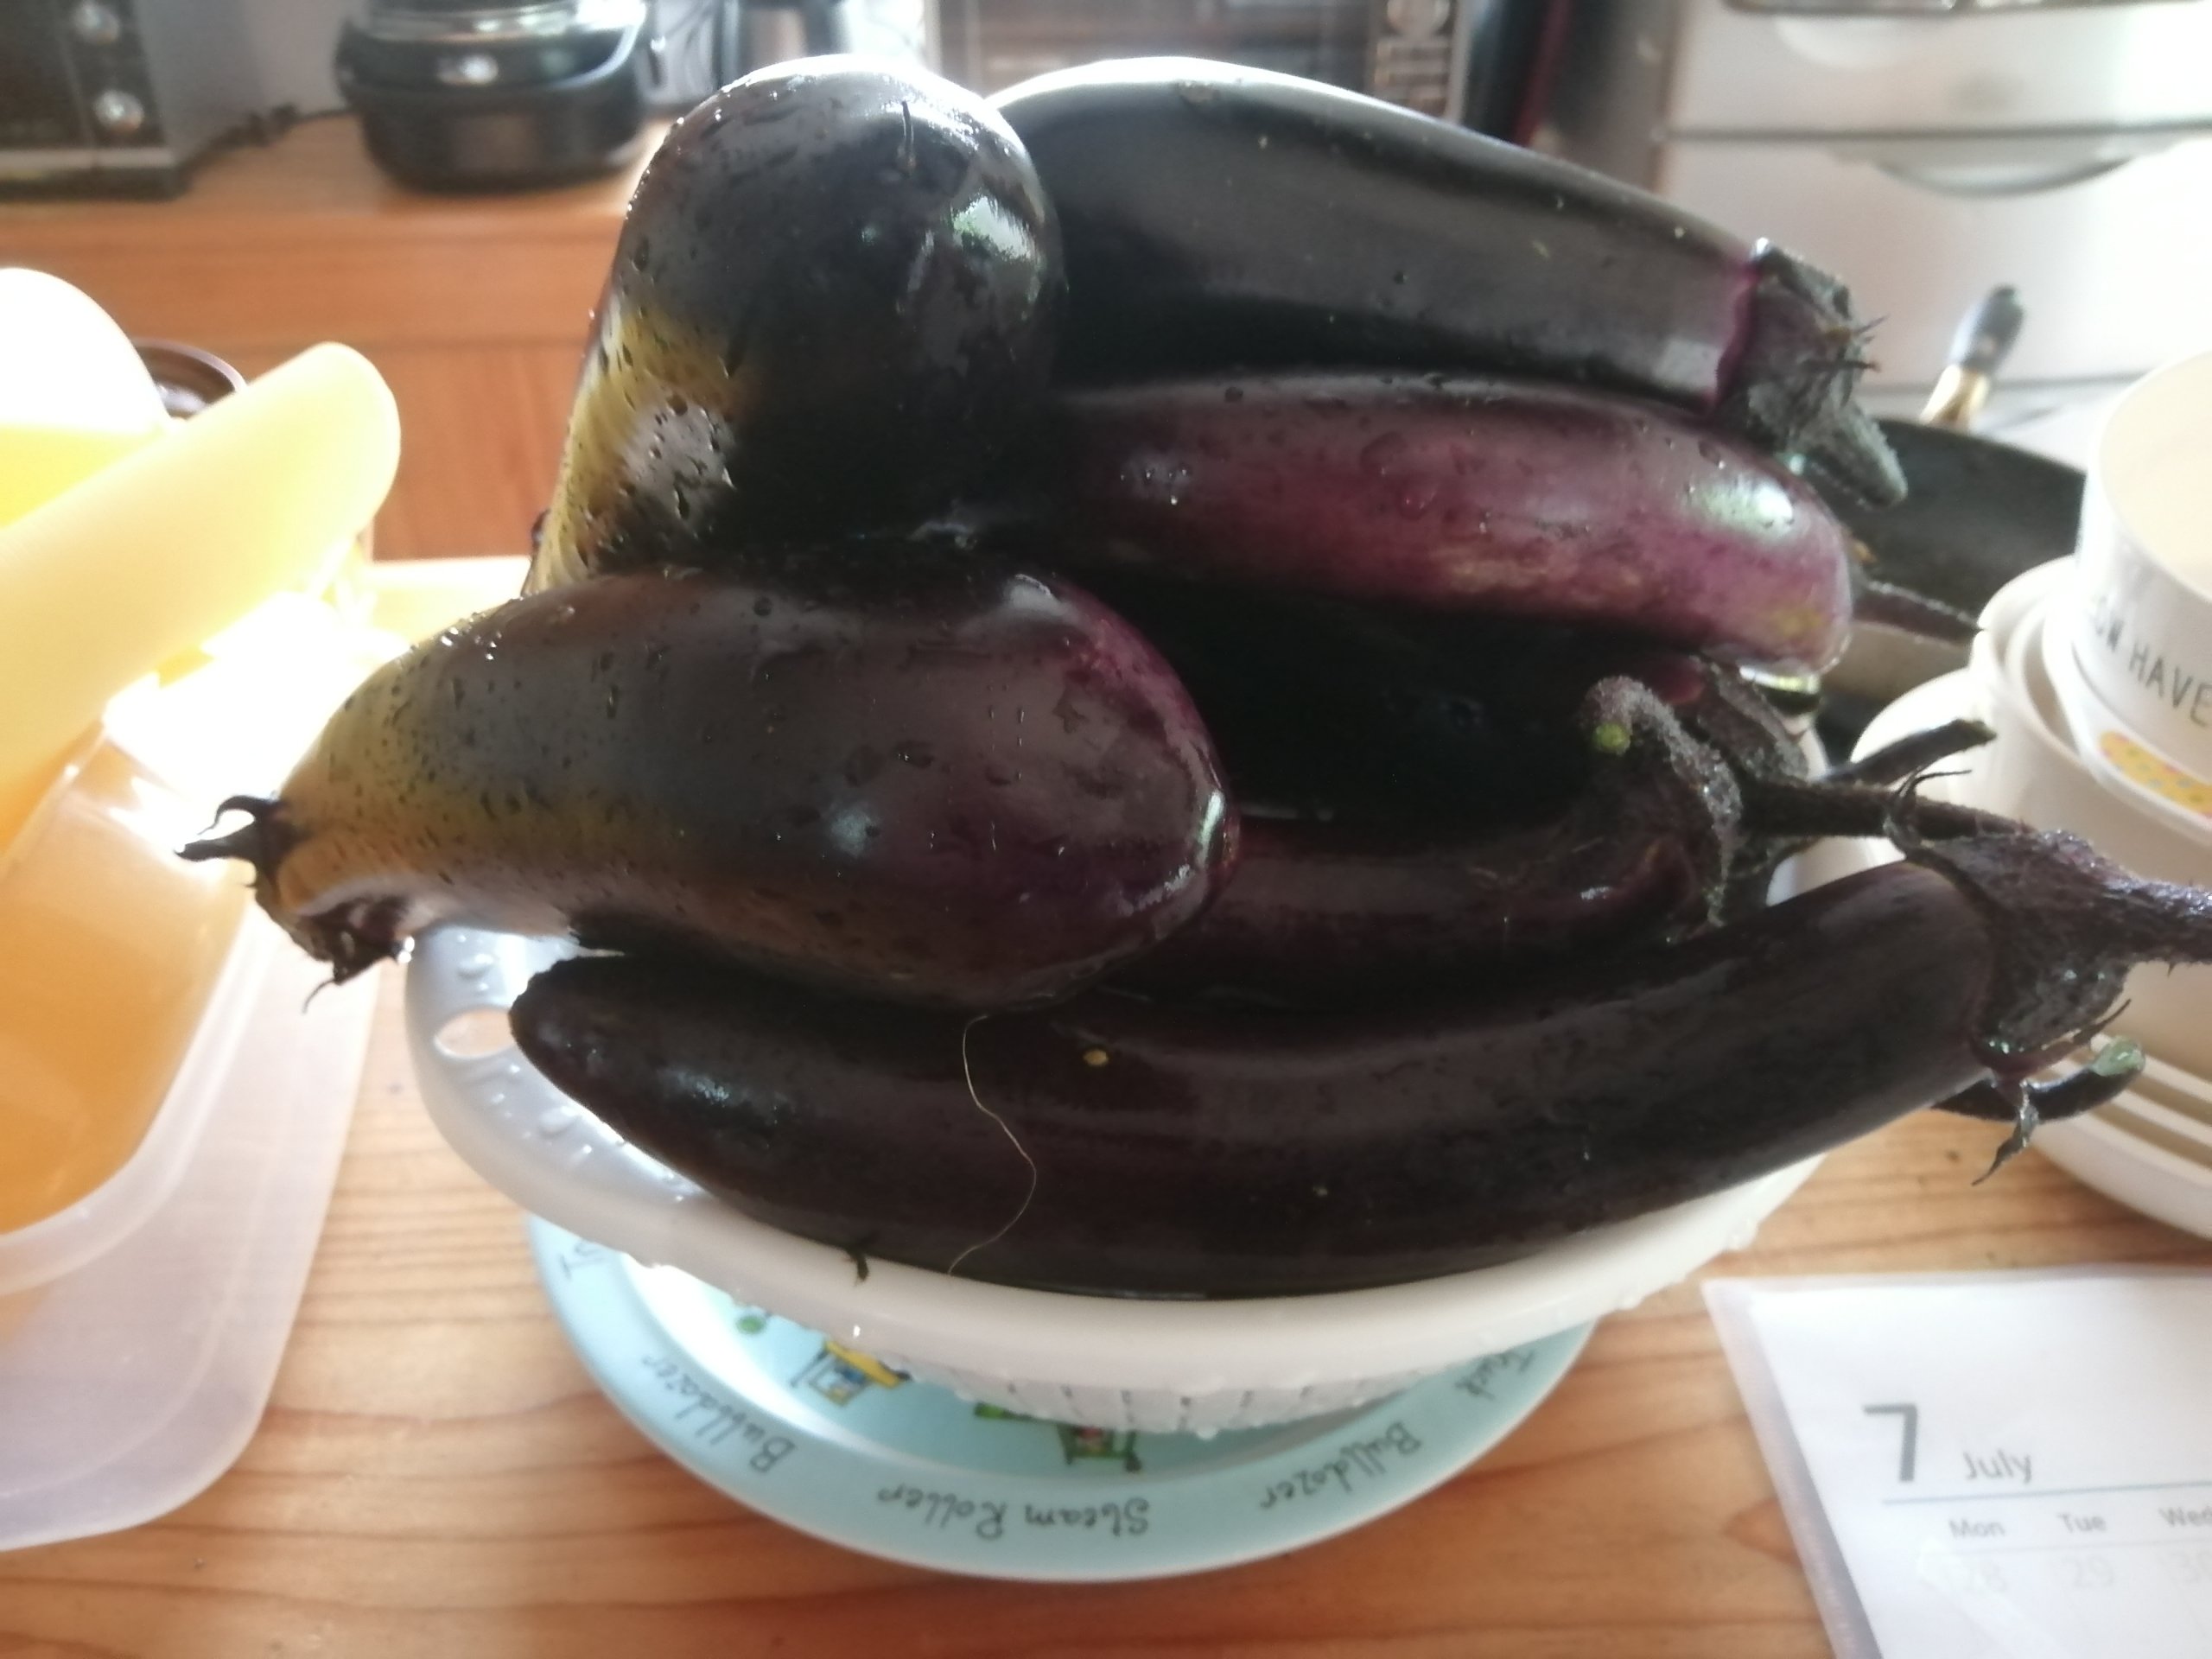 Around 20 eggplants today!